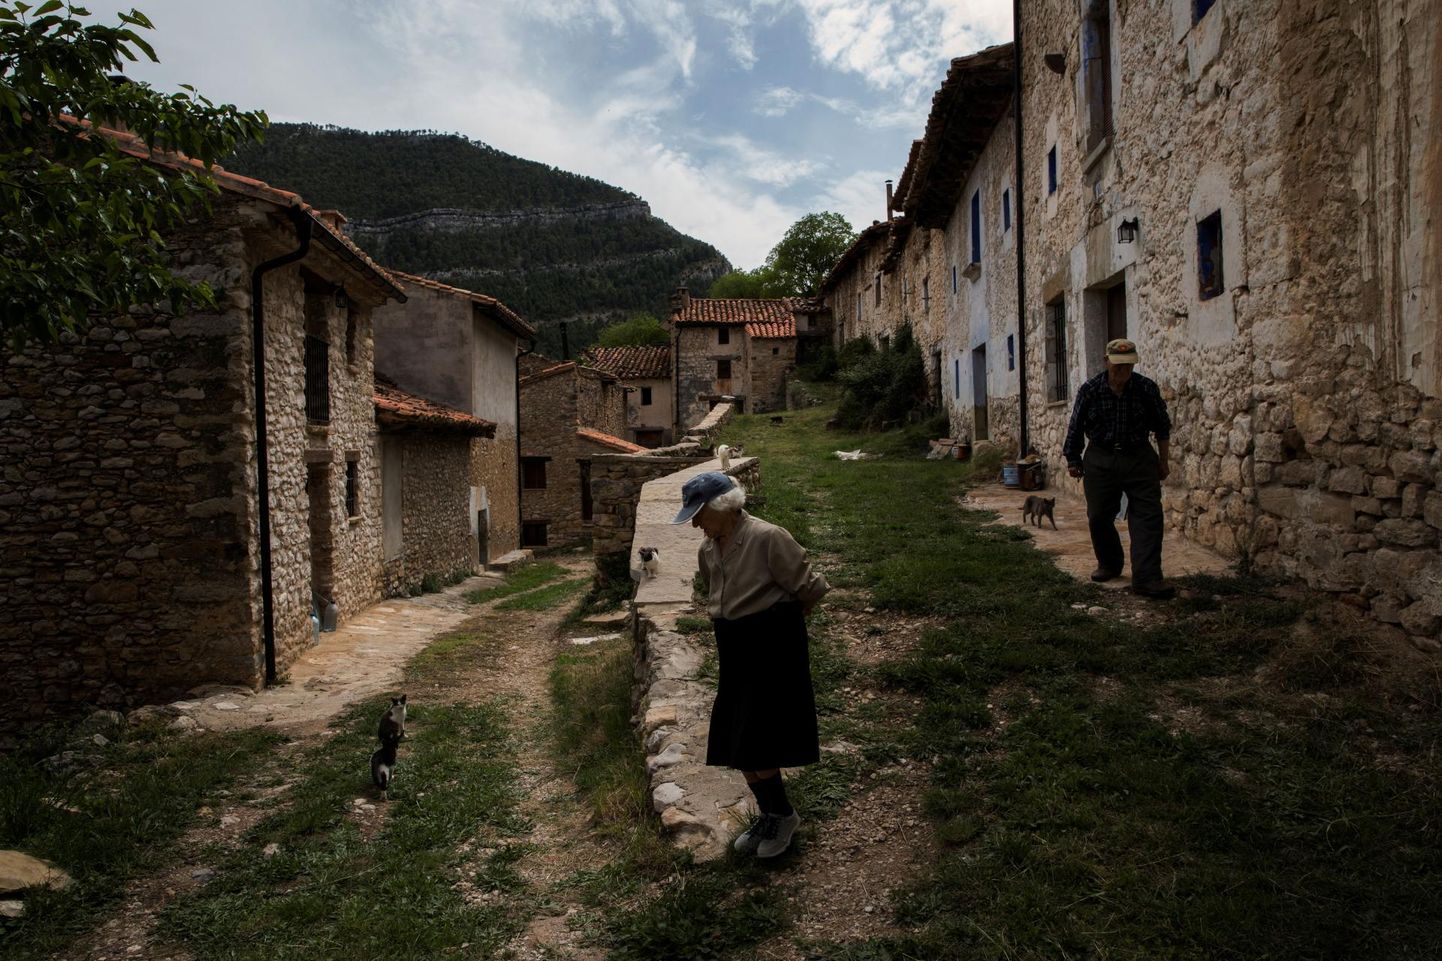 Üle 80 aasta vanad Sinforosa Sancho ja tema abikaasa Juan Martin Colomer jalutavad Ida-Hispaania kõrgmaa La Estrella küla peatänaval. Kunagi elas külas üle 200 inimese, kuid viimased kolm aastakümmet on eakas abielupaar olnud asula ainsad elanikud.